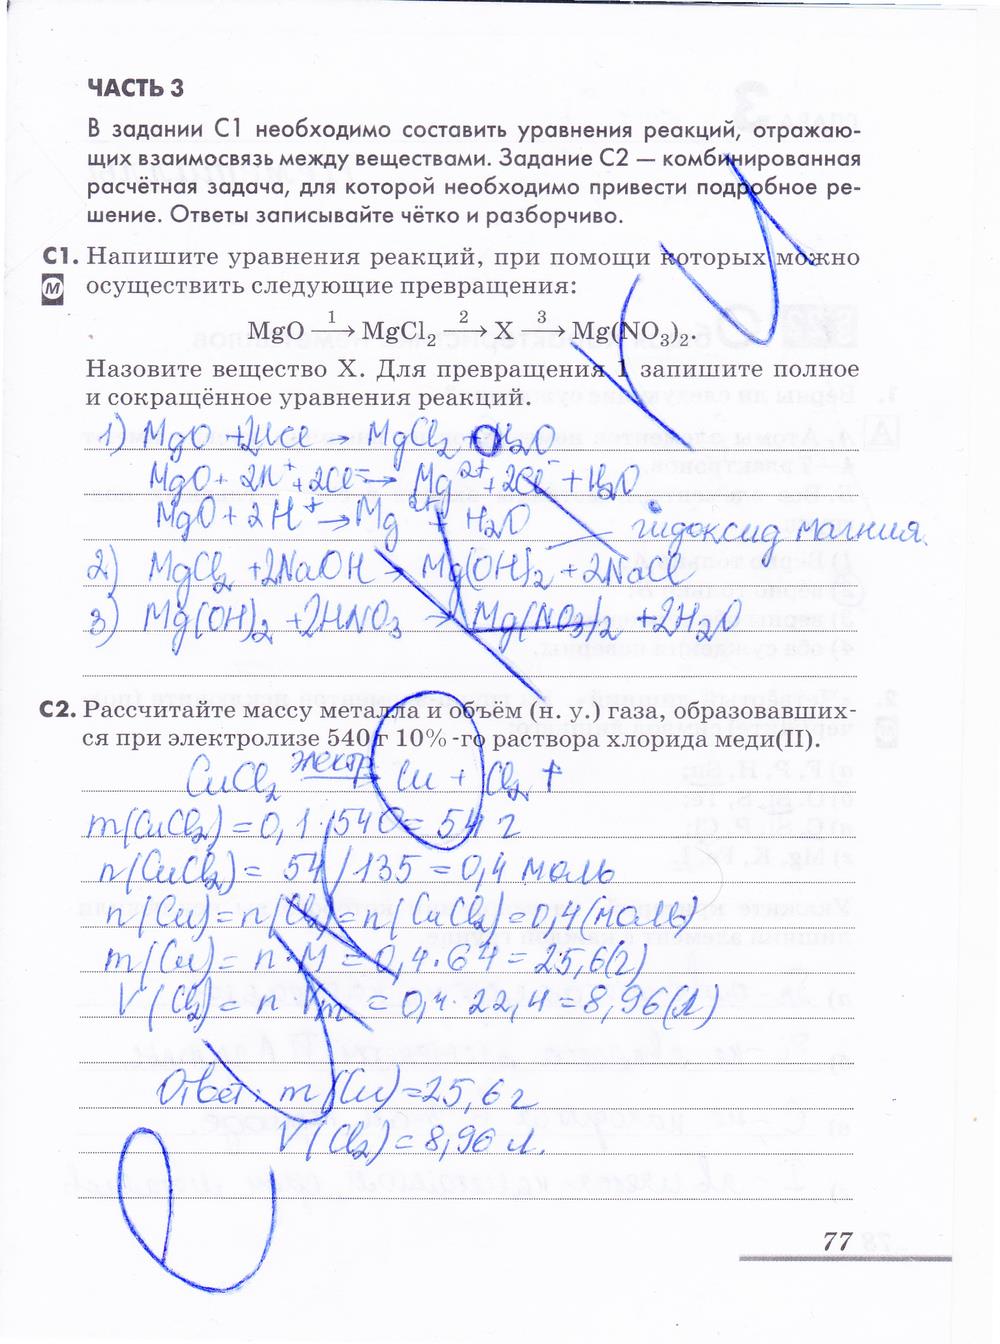 гдз 9 класс рабочая тетрадь страница 77 химия Еремин, Дроздов